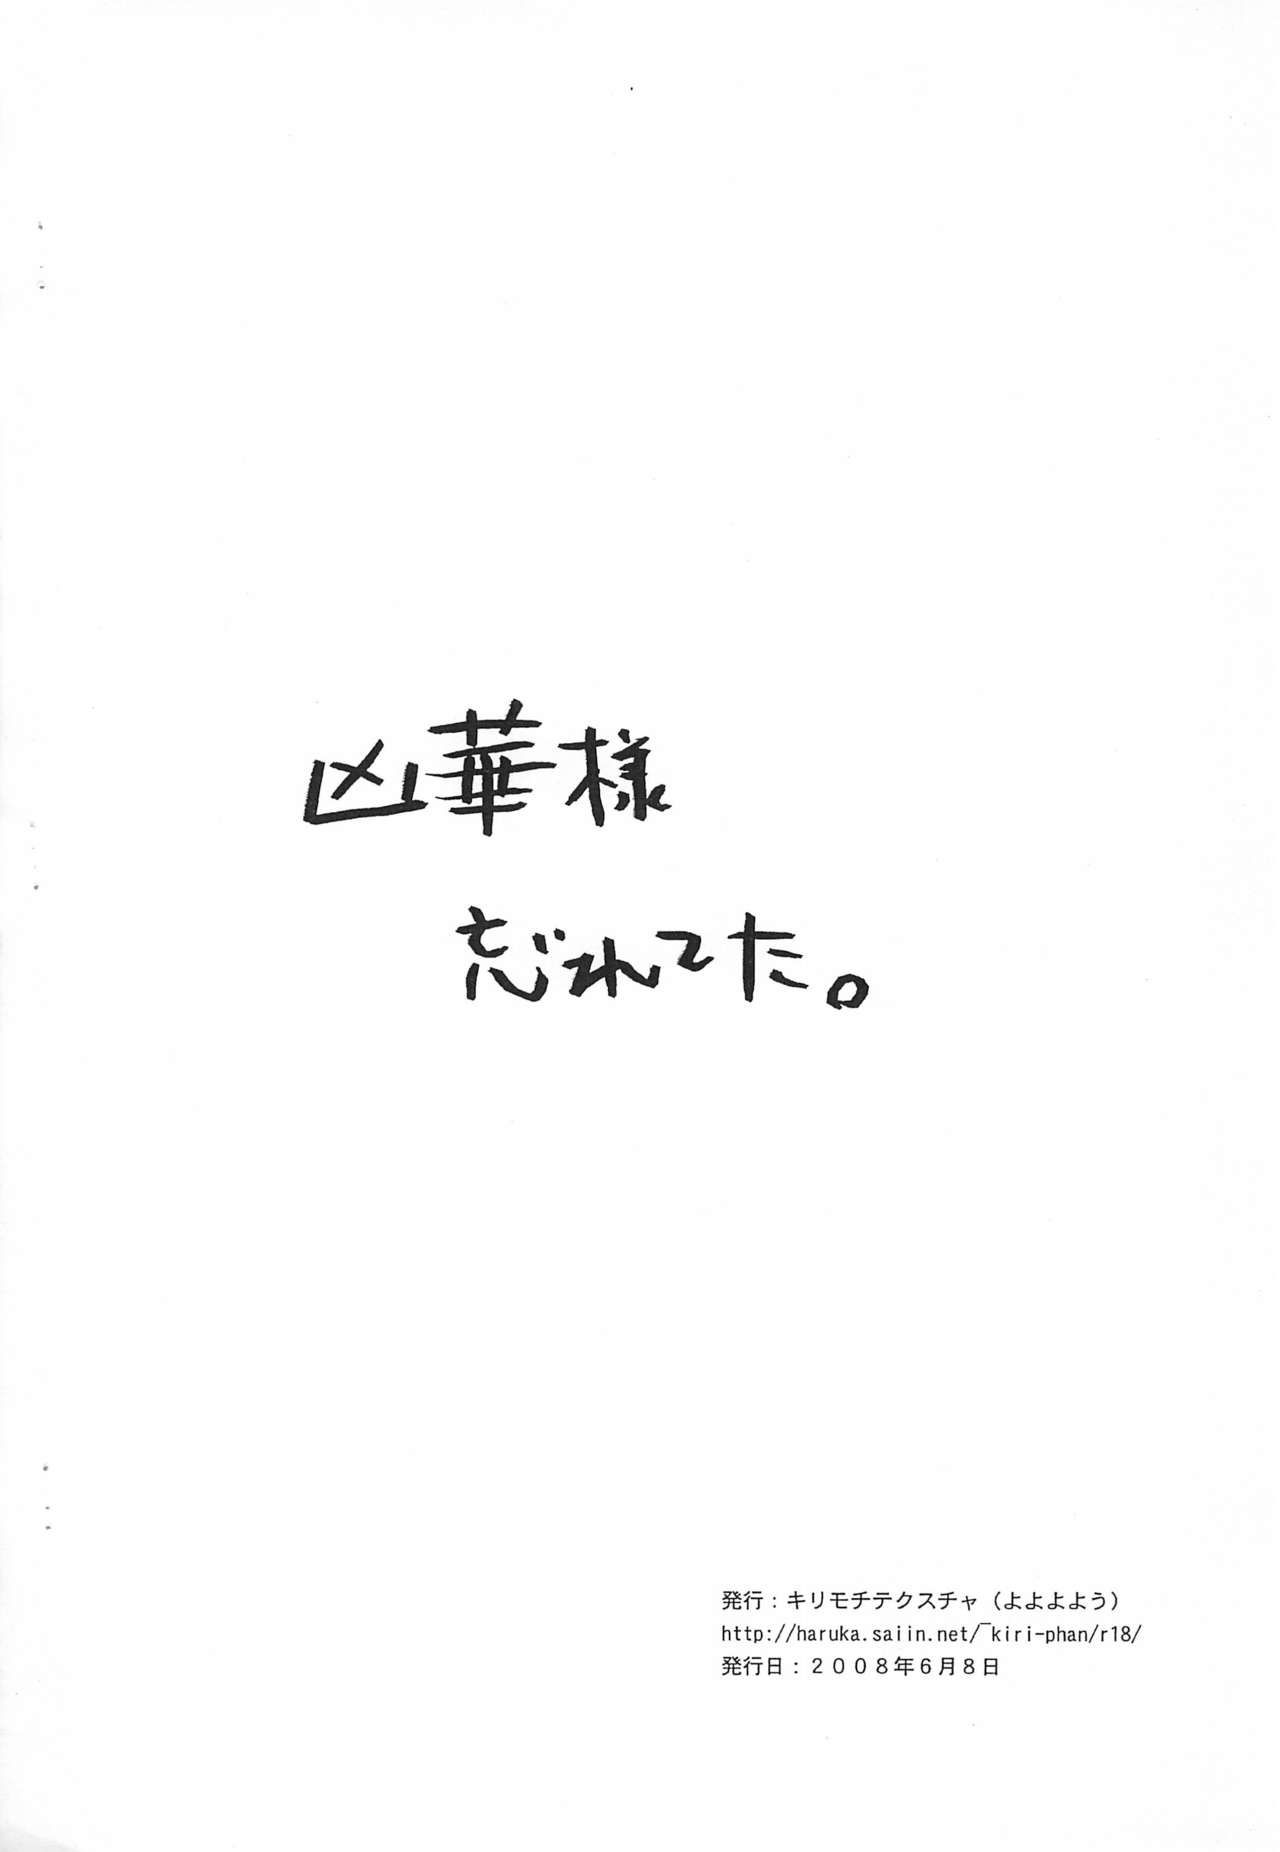 (コミコミ12) [キリモチテクスチャ (よよよよう)] 2008年上半期コピー本